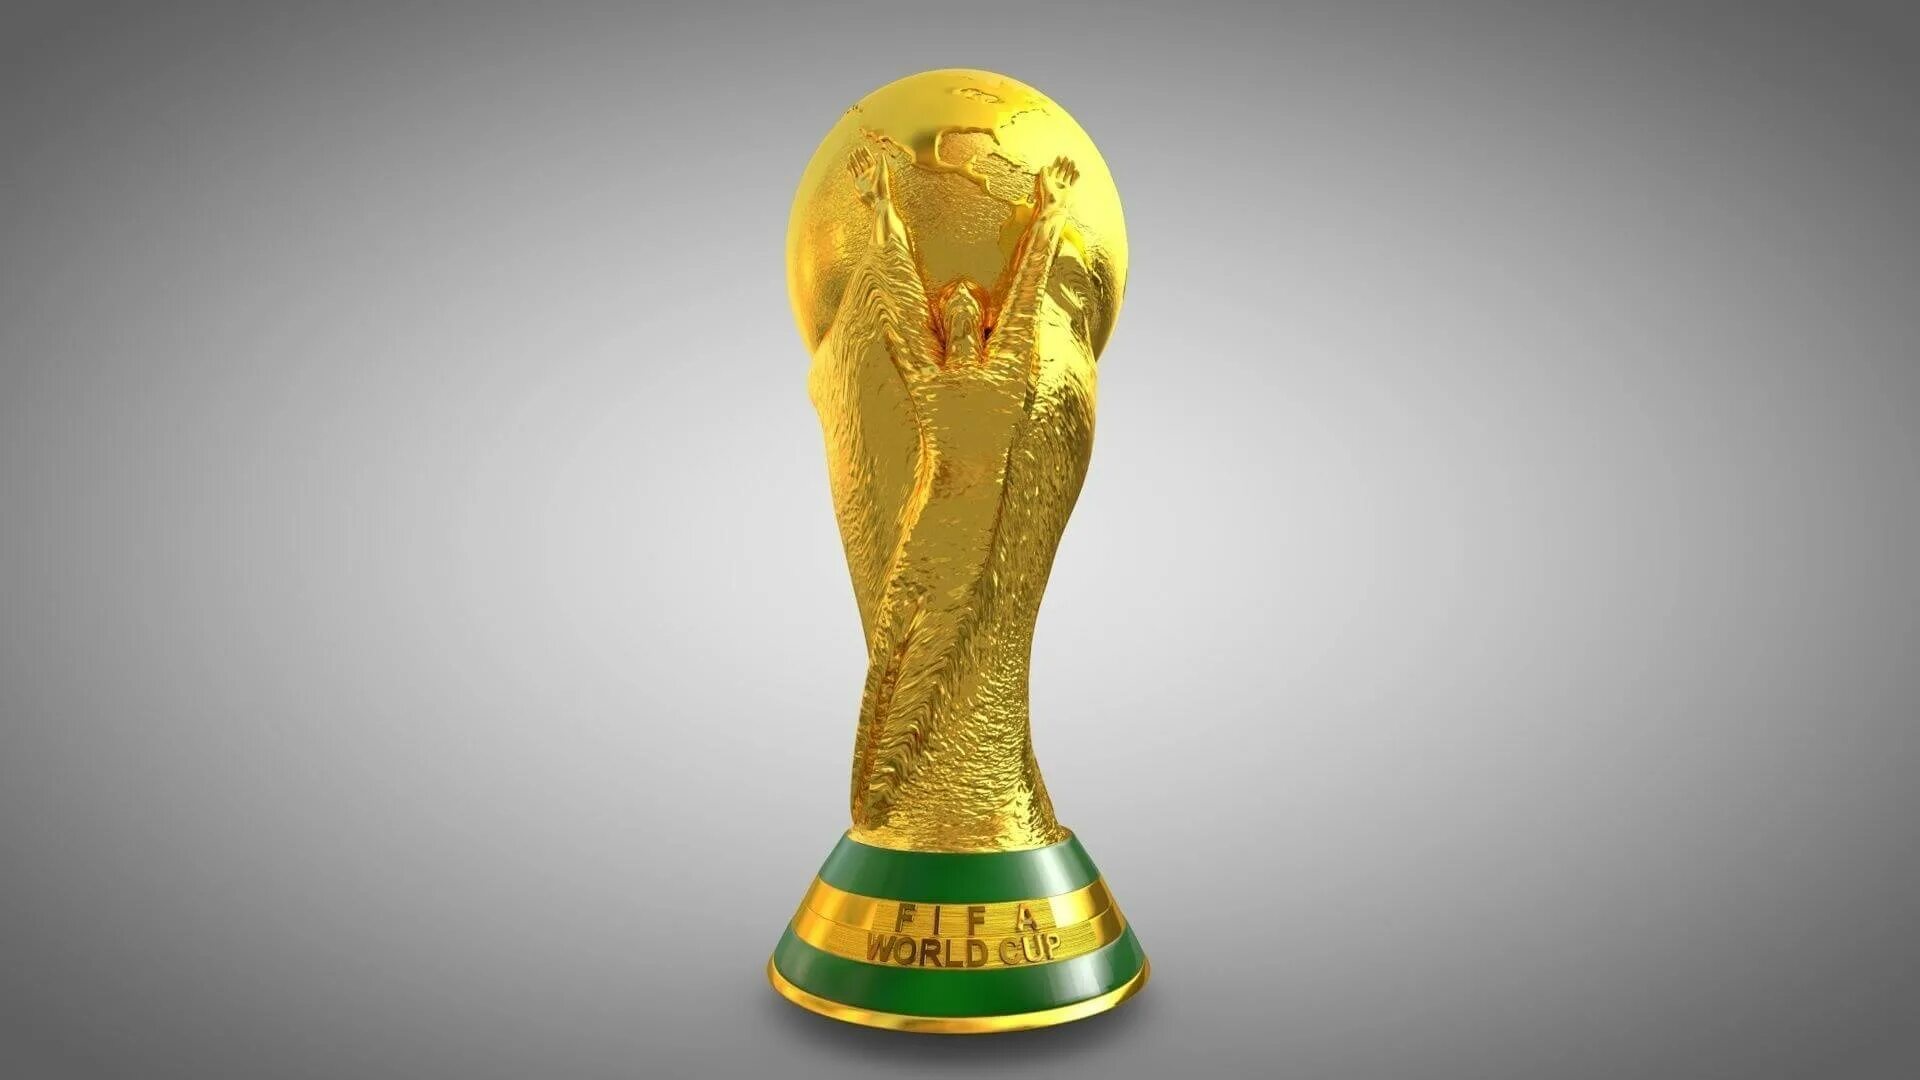 1 world cup. Кубок ФИФА ворлд кап. FIFA World Cup Trophy 1930.